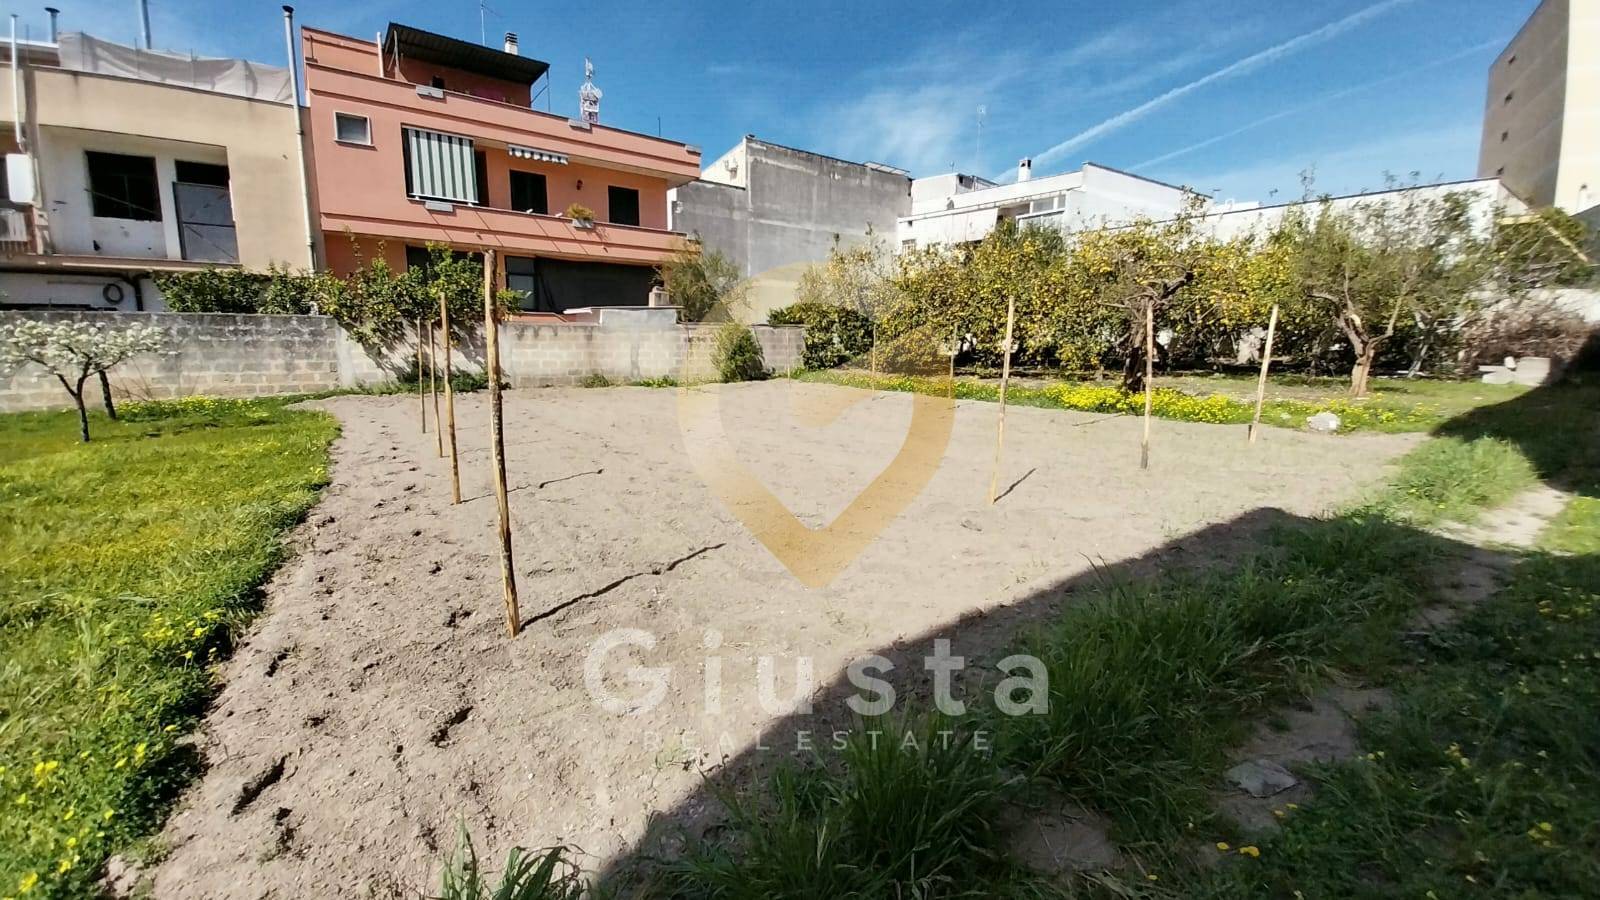 Terreno Edificabile Residenziale in vendita a Oria, 9999 locali, prezzo € 70.000 | PortaleAgenzieImmobiliari.it